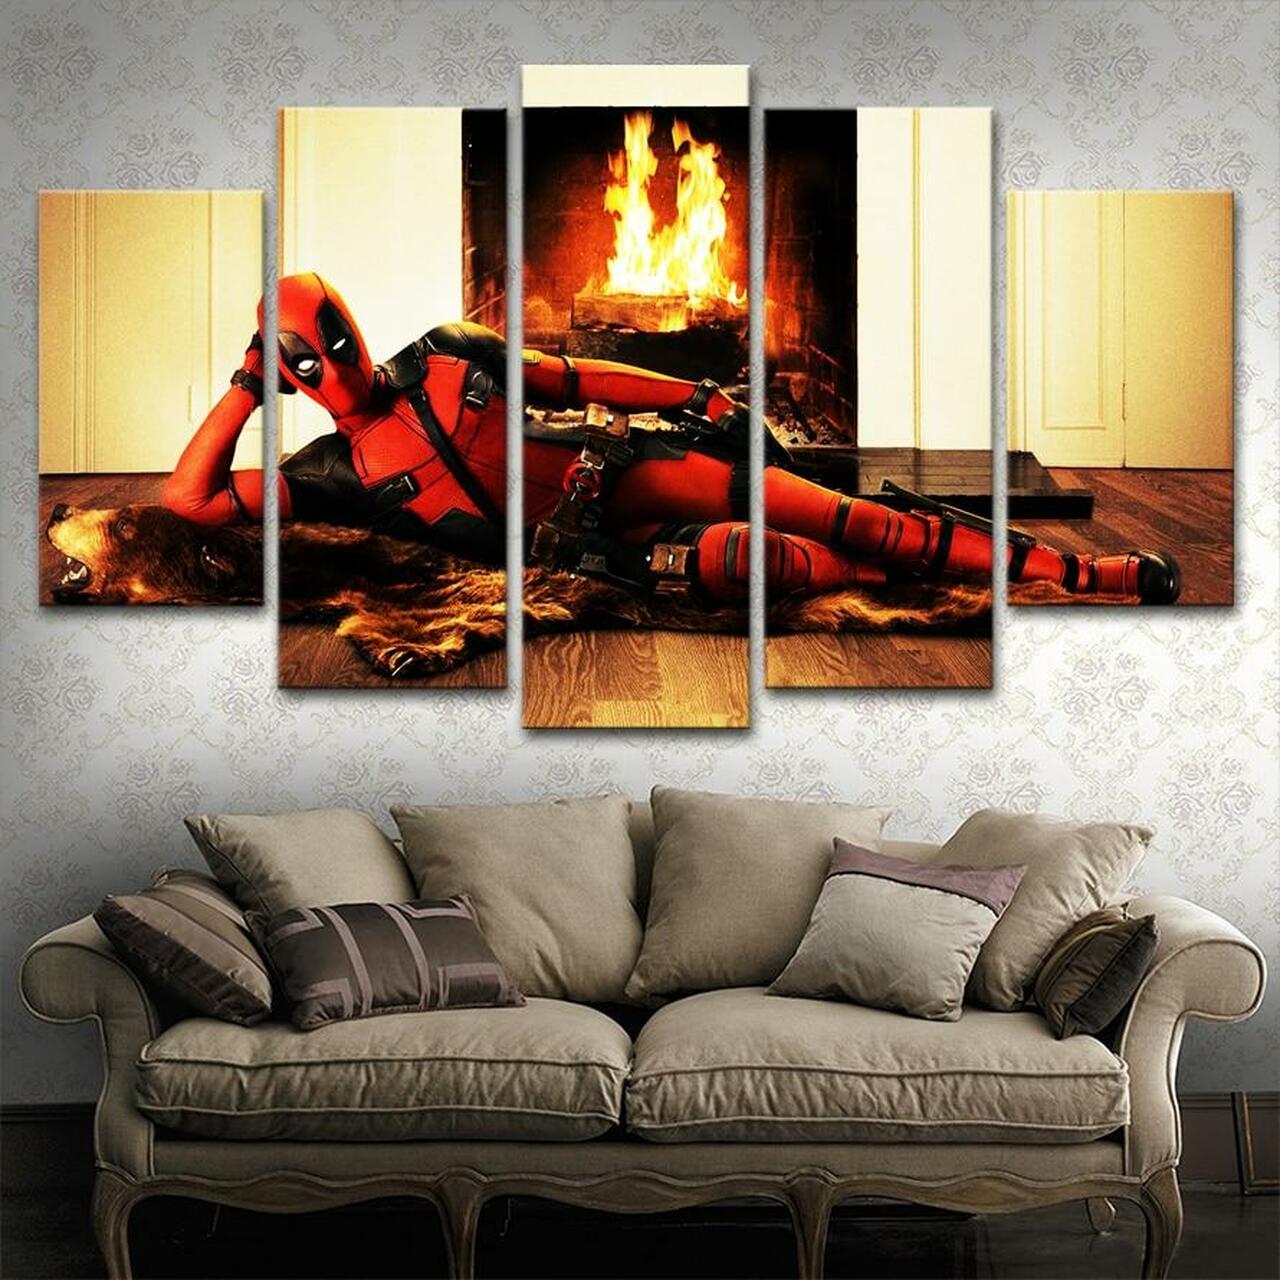 Deadpool At Fireplace 5 Piece Canvas Art Wall Decor